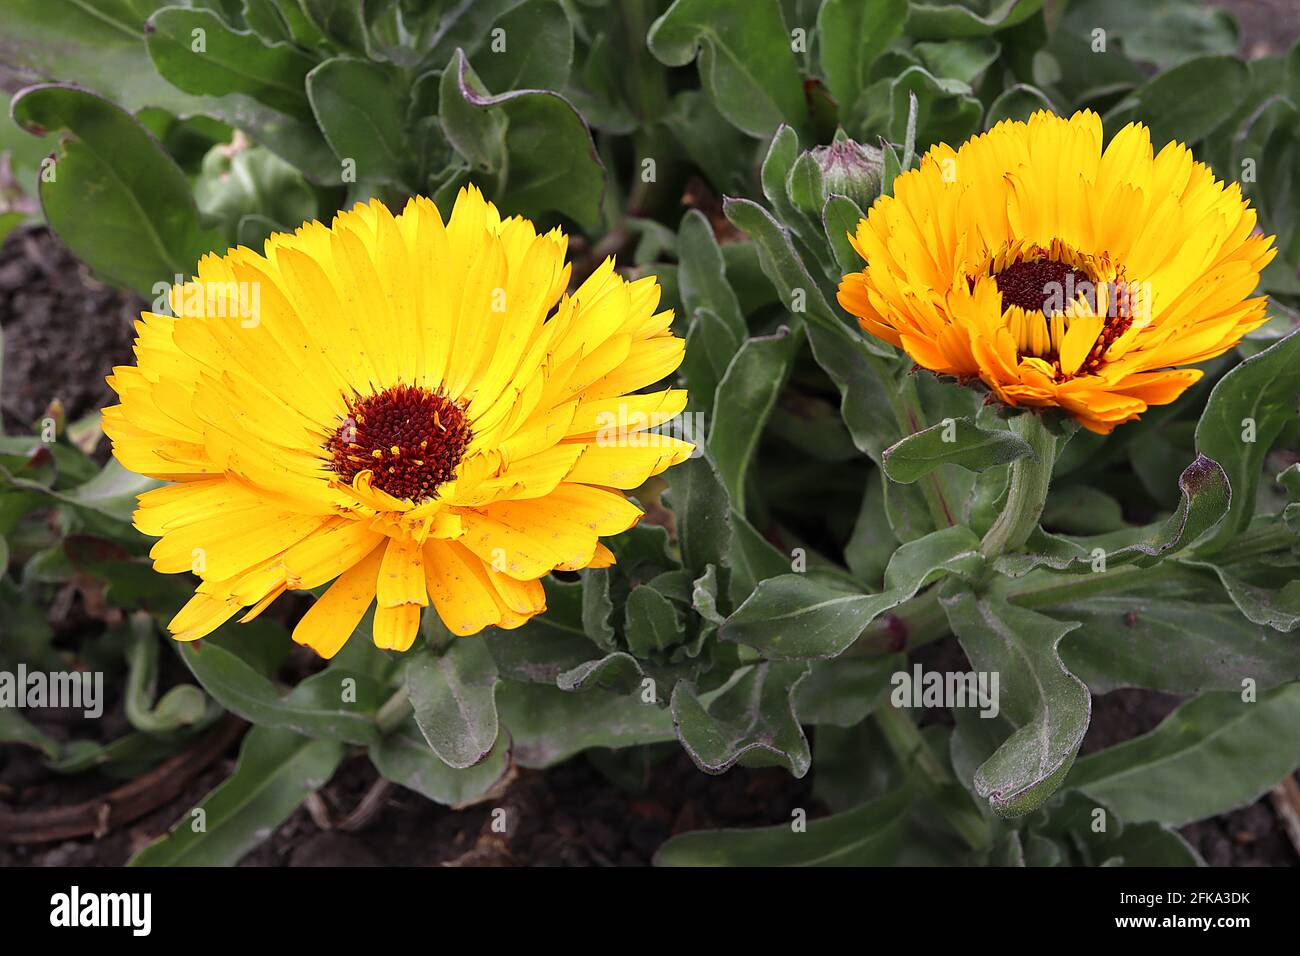 Calendula officinalis Pot marigold – yellow daisy-like flowers with medicinal properties,  April, England, UK Stock Photo